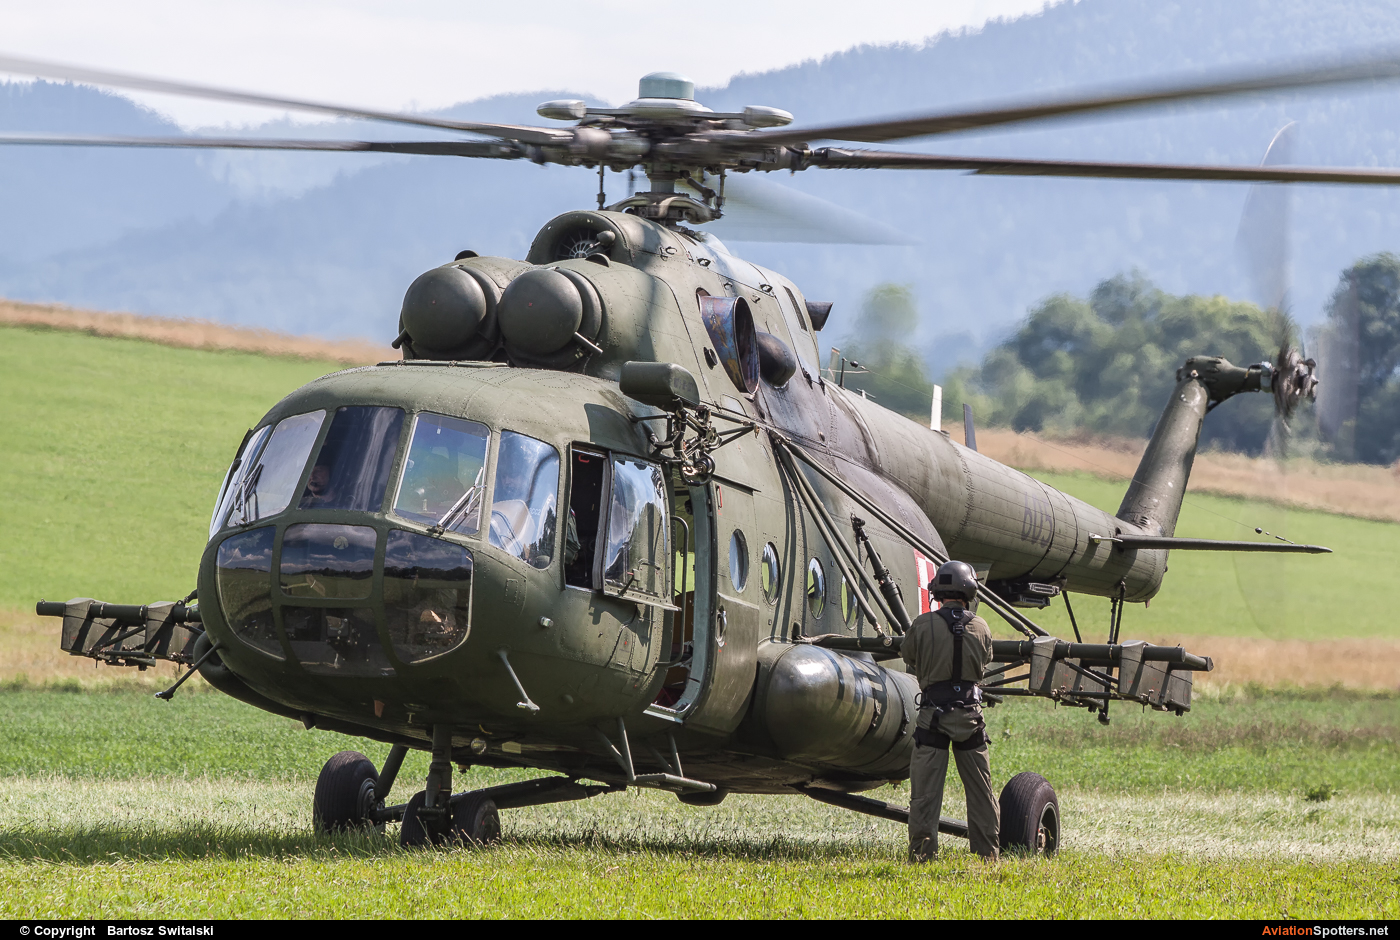   Mi-17-1V  (605) By Bartosz Switalski (BartoszSwitalski)